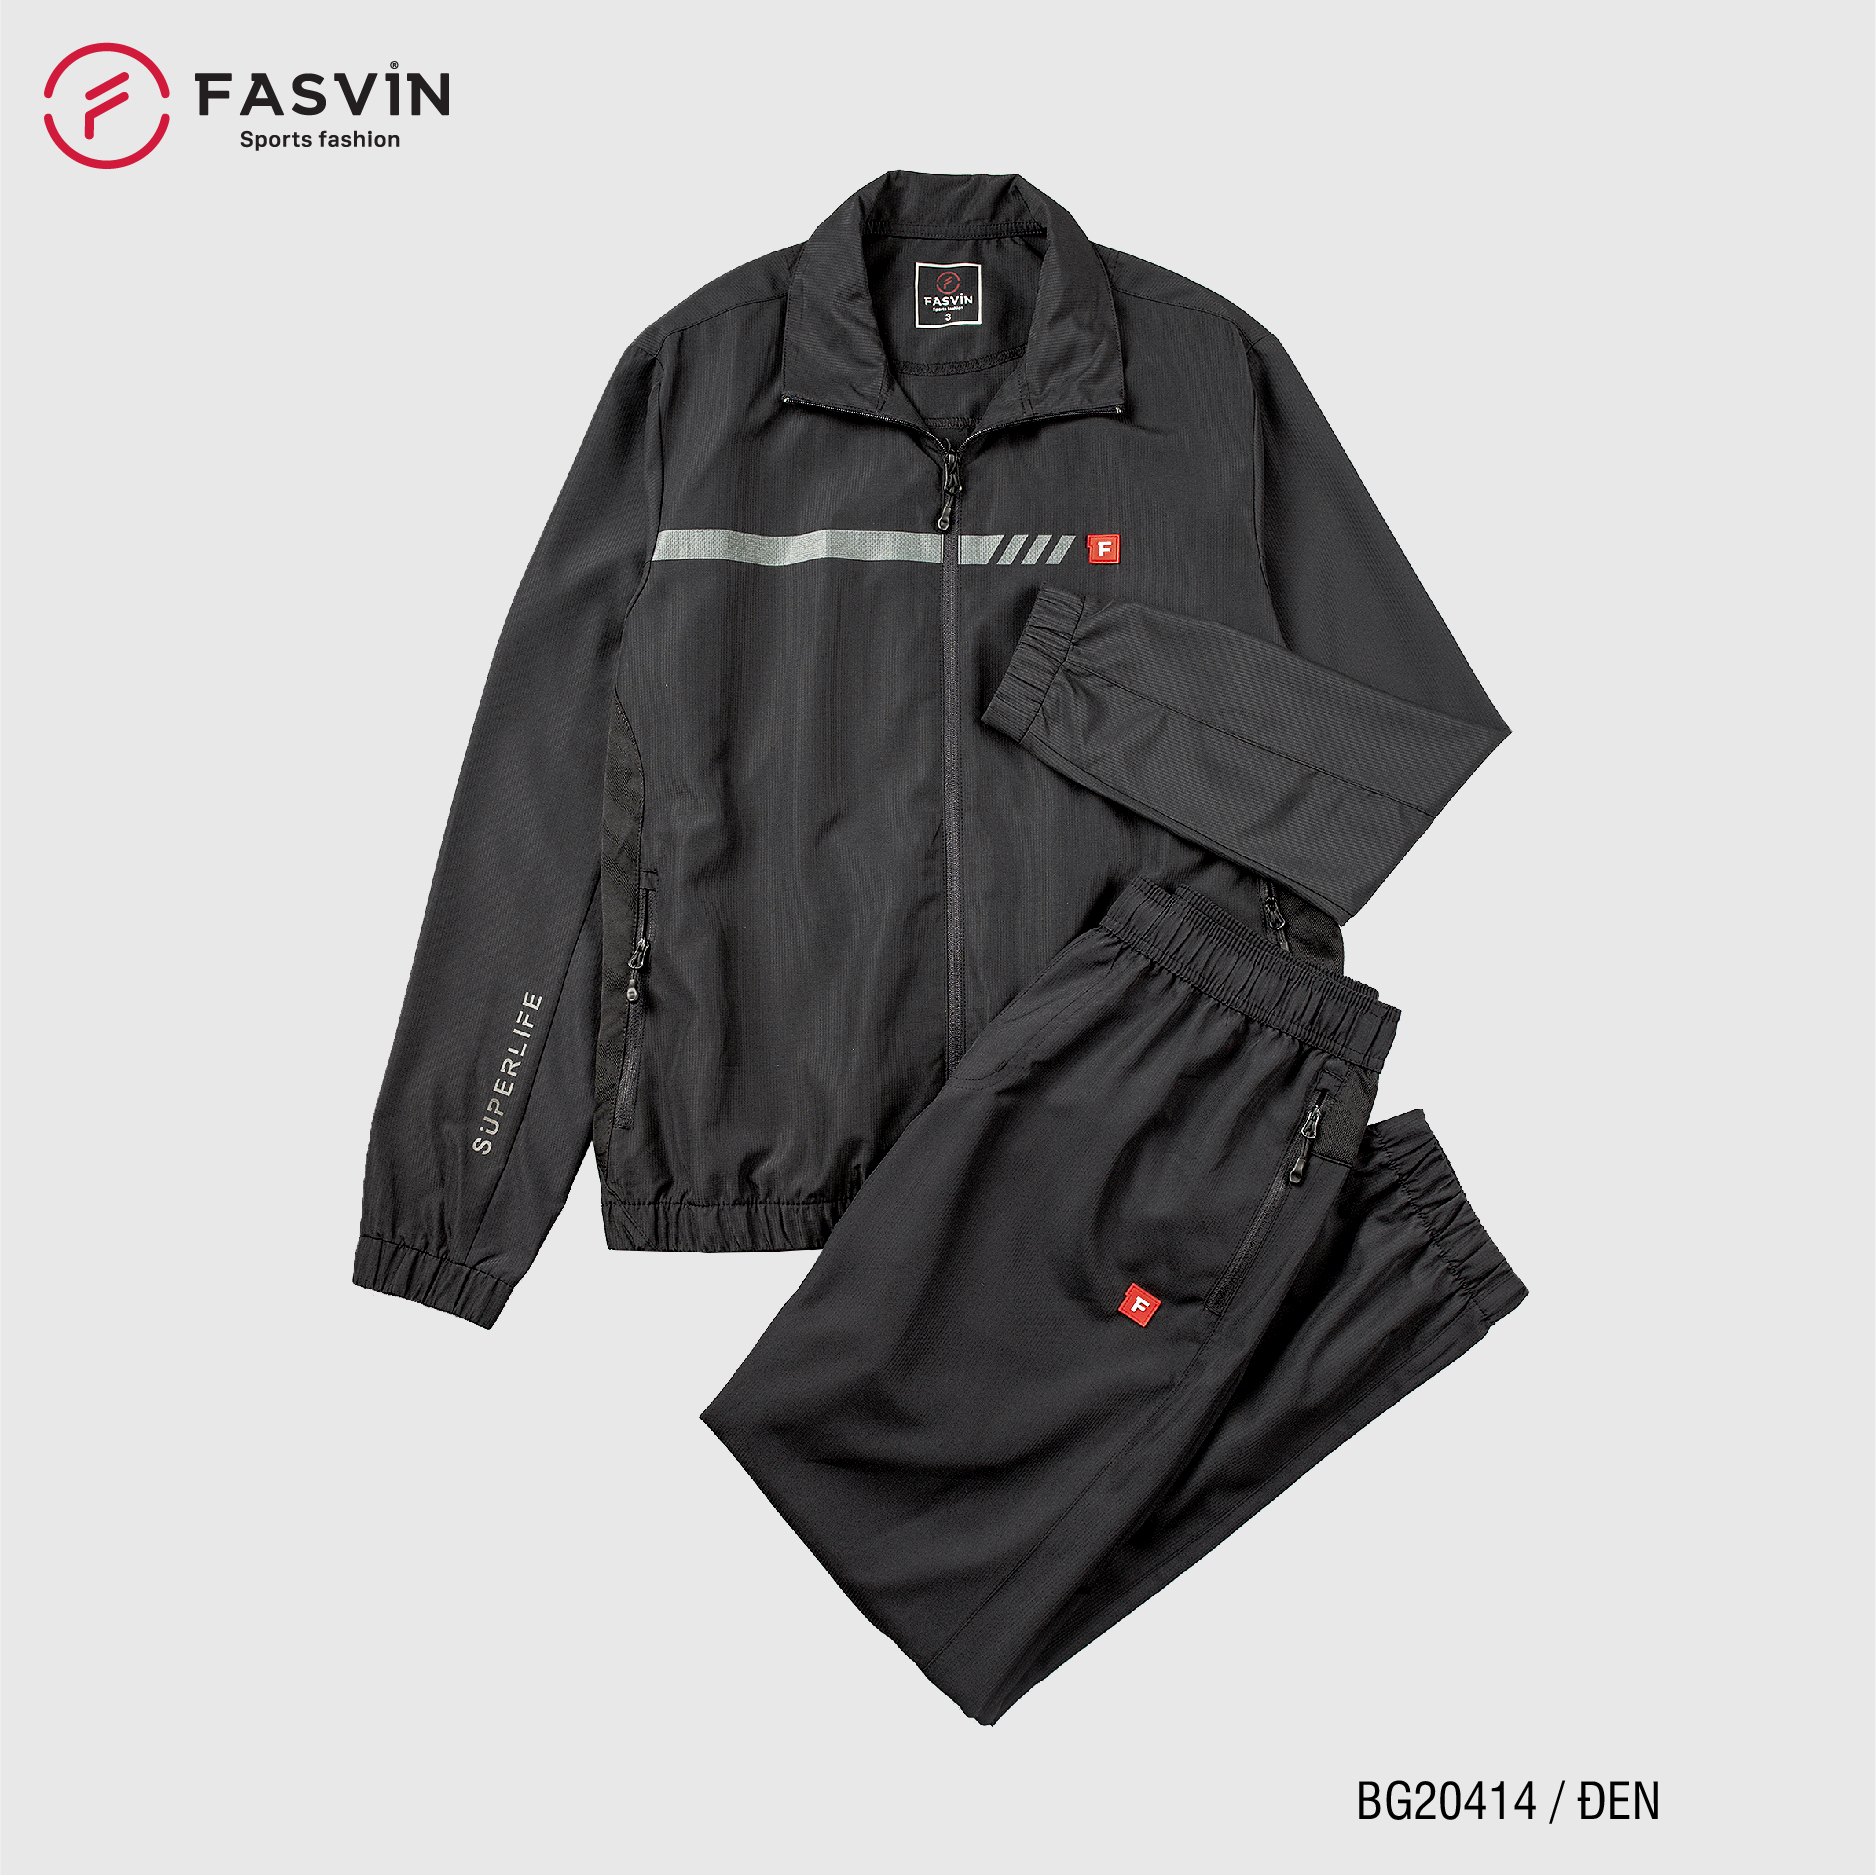 Bộ quần áo thể thao nam Fasvin BG20414.HN chất vải gió mềm mại cao cấp